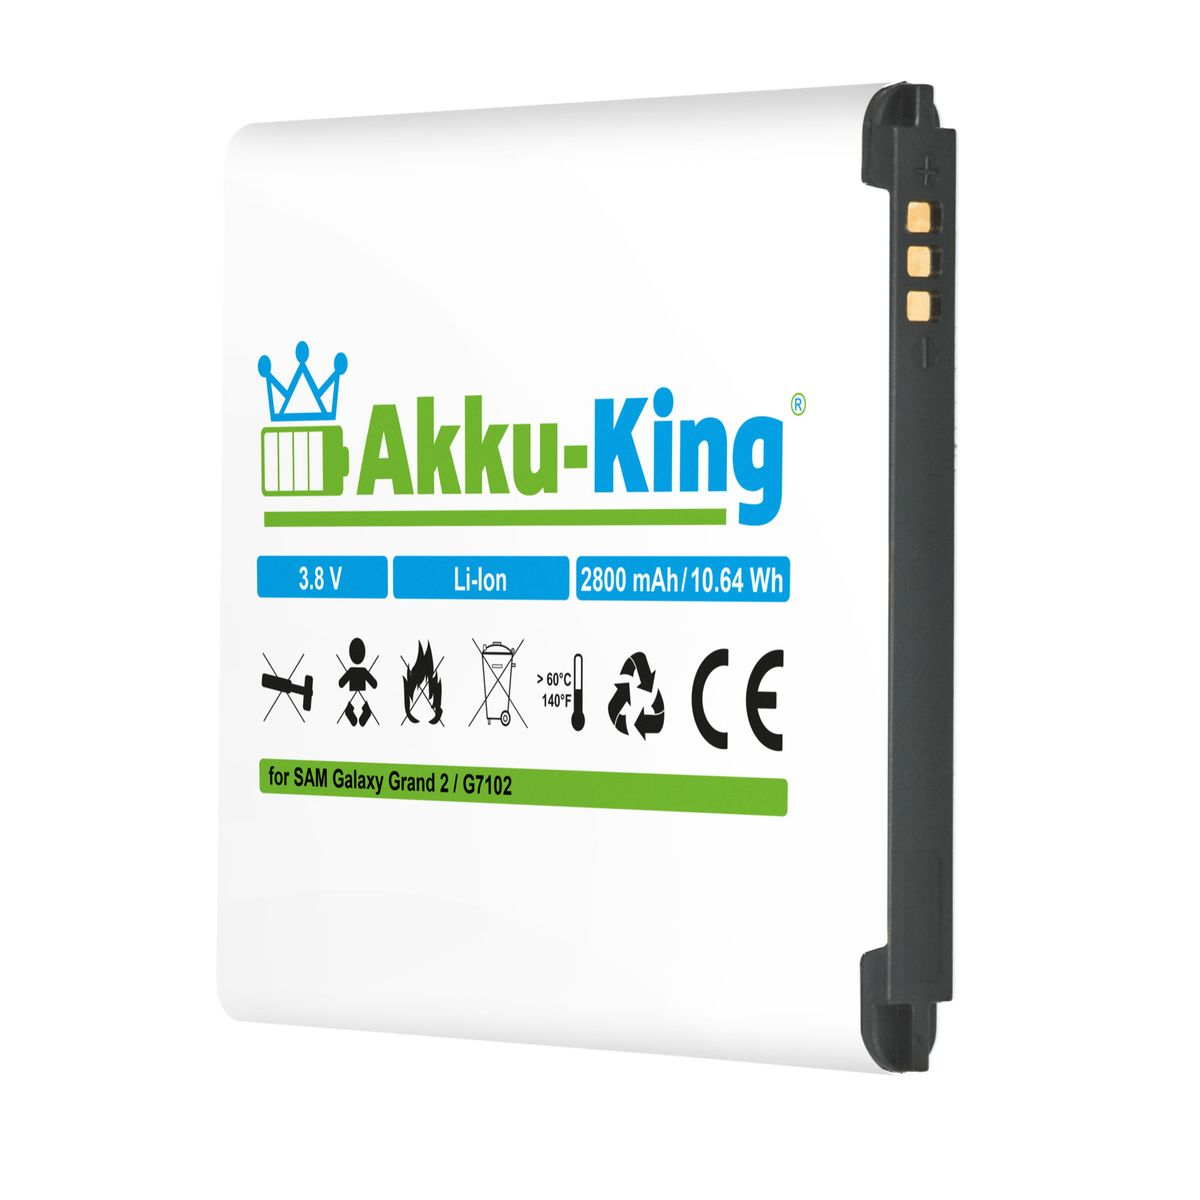 2800mAh 3.8 Samsung kompatibel mit EB665468LU Akku Li-Ion Handy-Akku, AKKU-KING Volt,